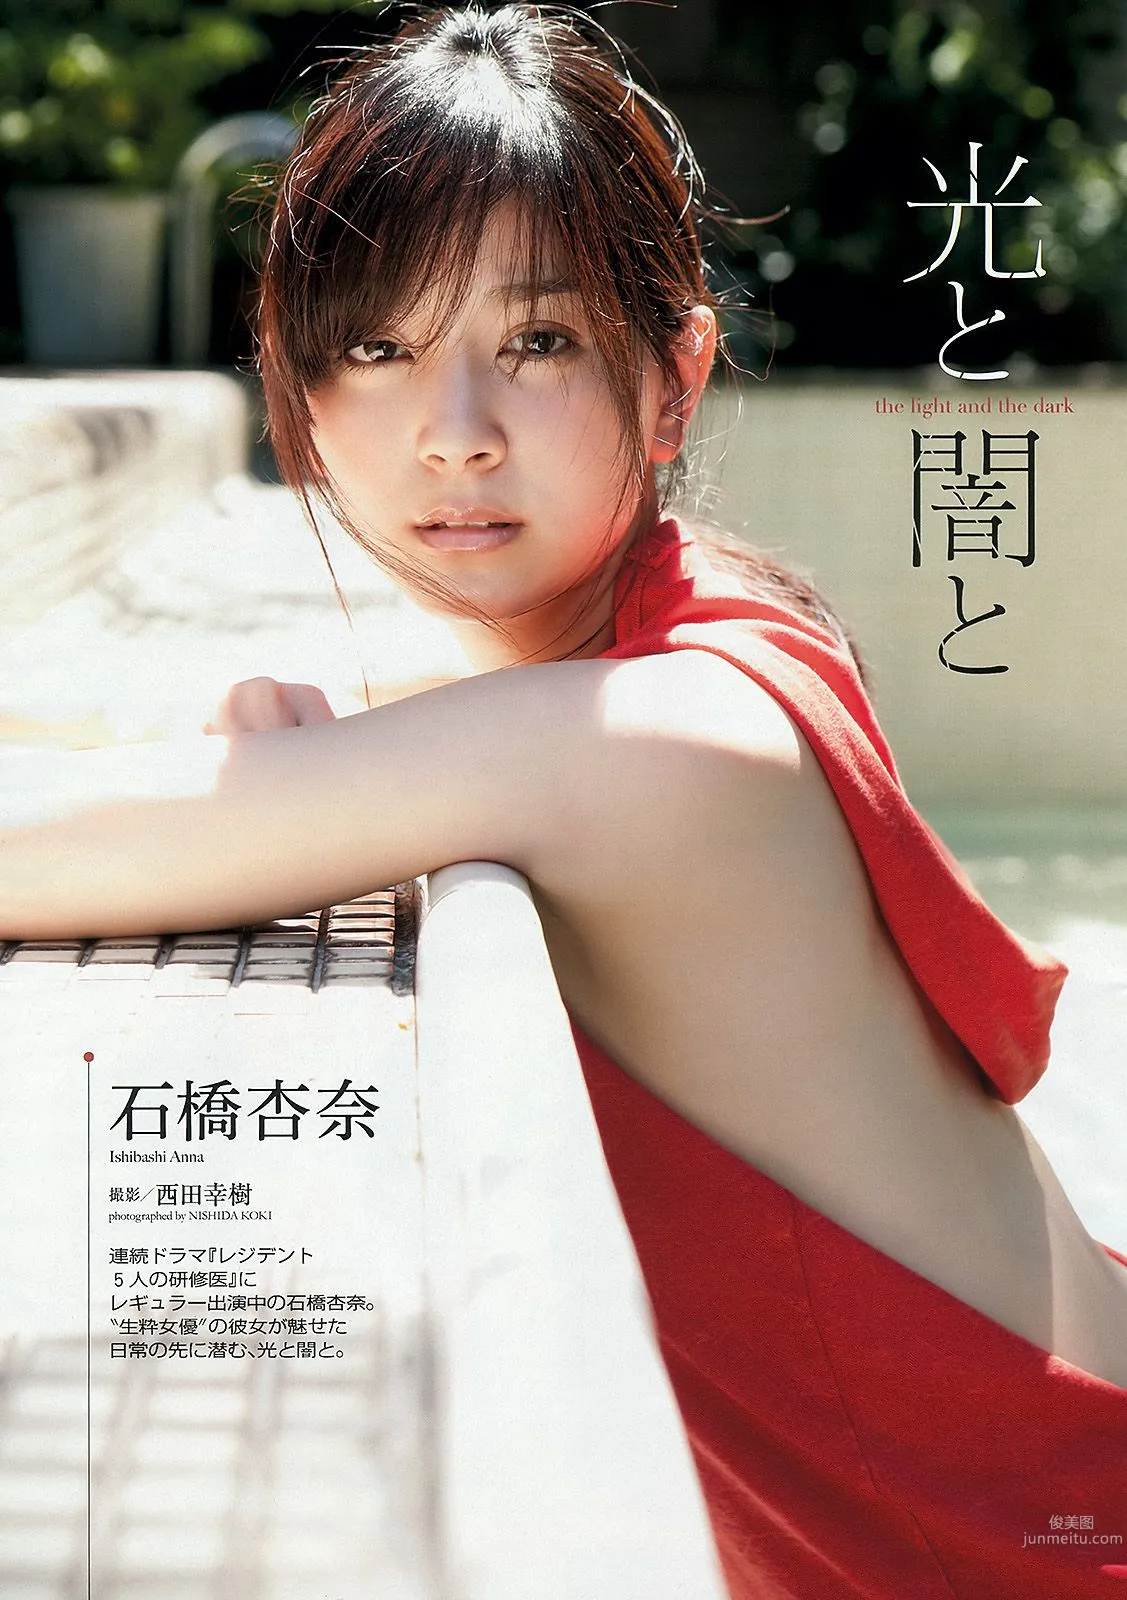 能年玲奈 AKB48 石橋杏奈 亜里沙 Ili 太田千晶 [Weekly Playboy] 2012年No.45 写真杂志12